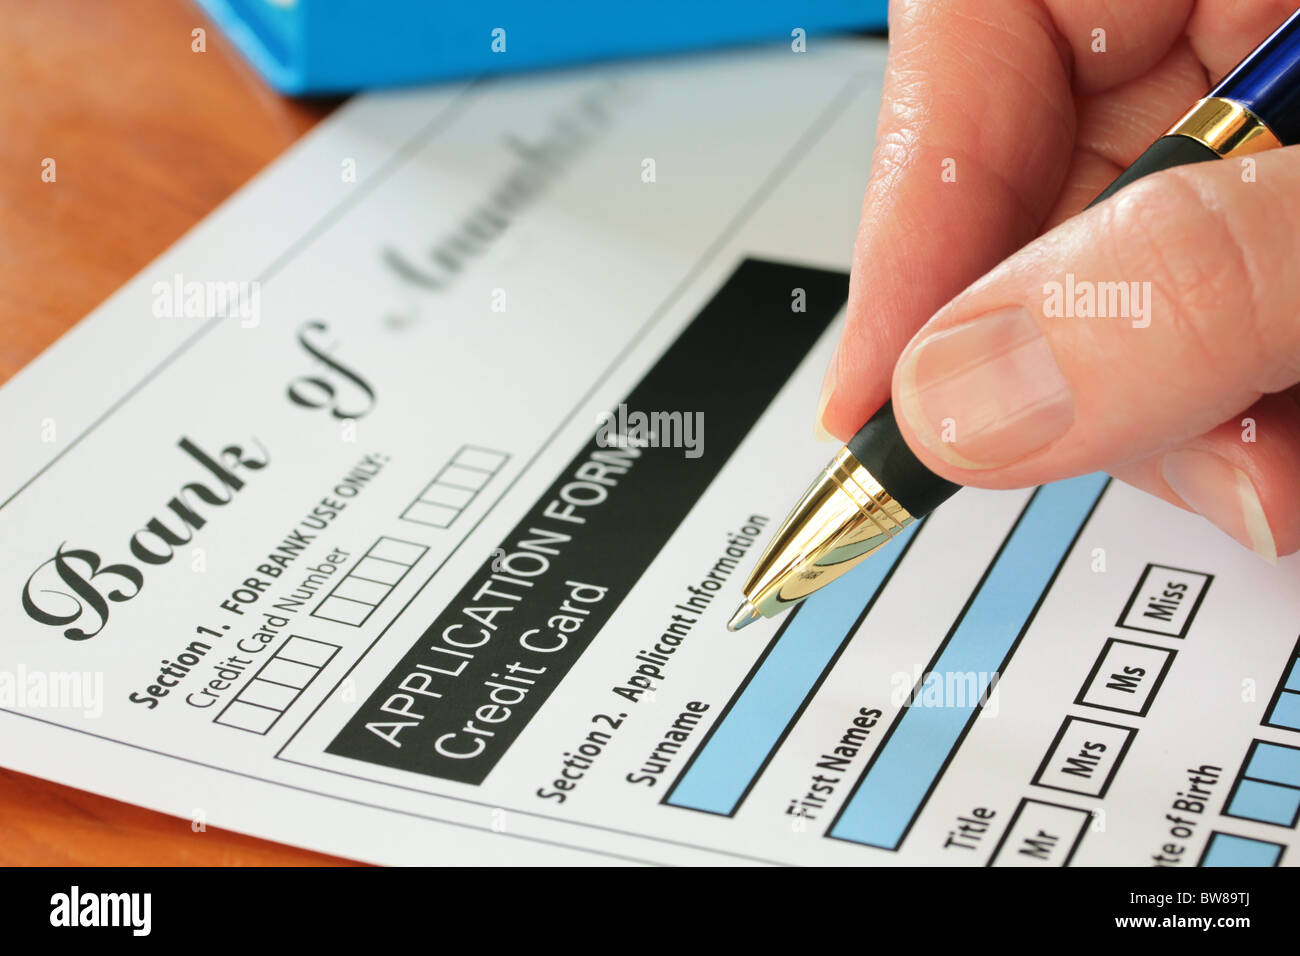 La main avec la signature d'un stylo d'une demande de carte de crédit fictif Banque D'Images